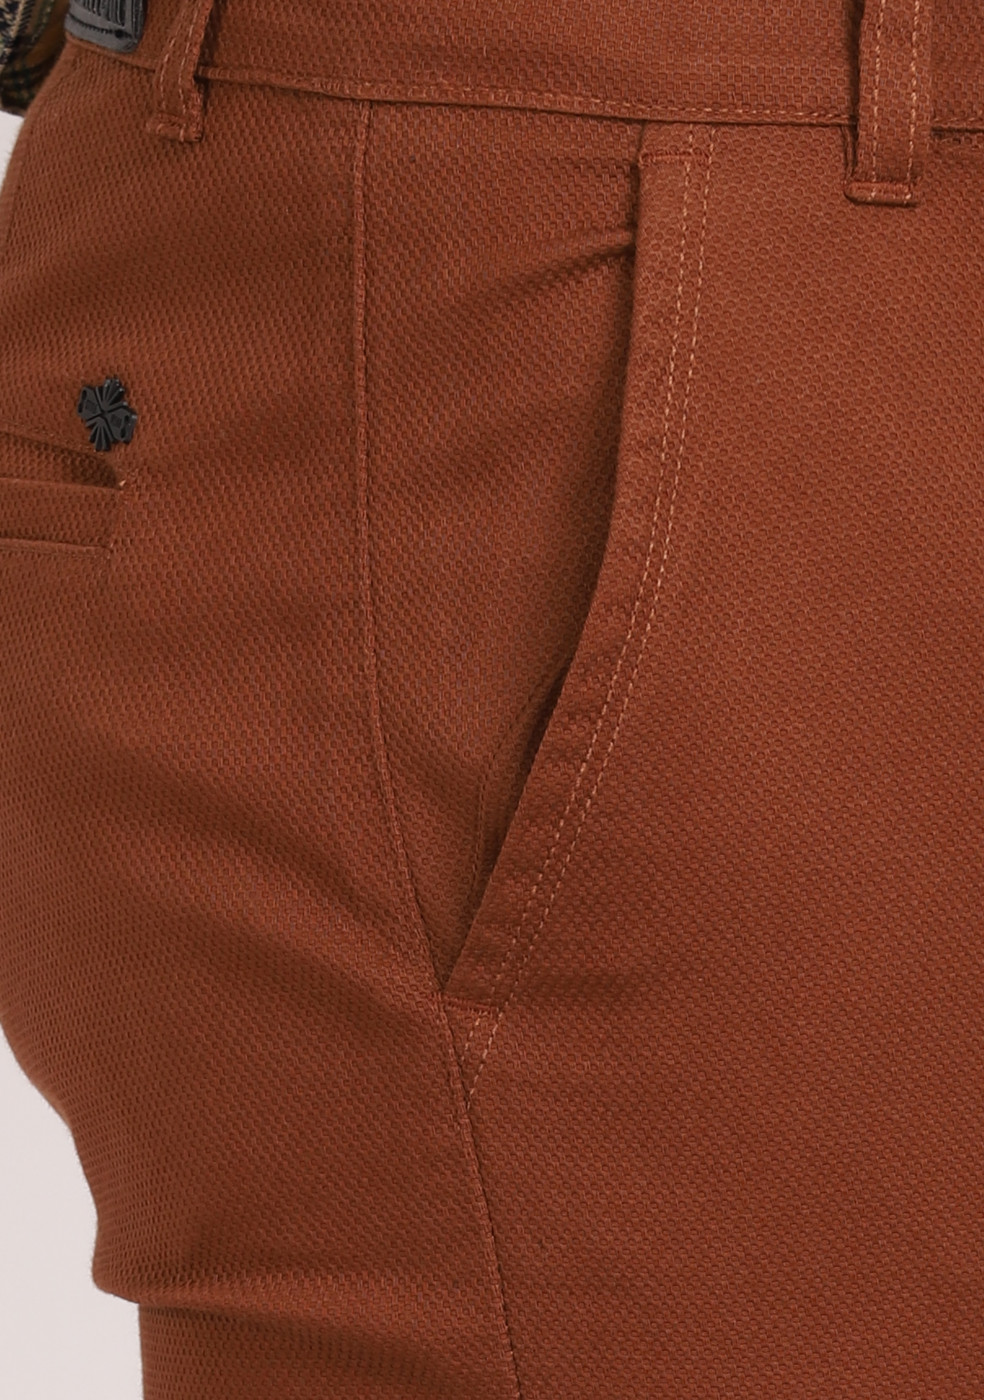 ASHTOM Copper Formal Cotton Trouser Regular Fit For Men